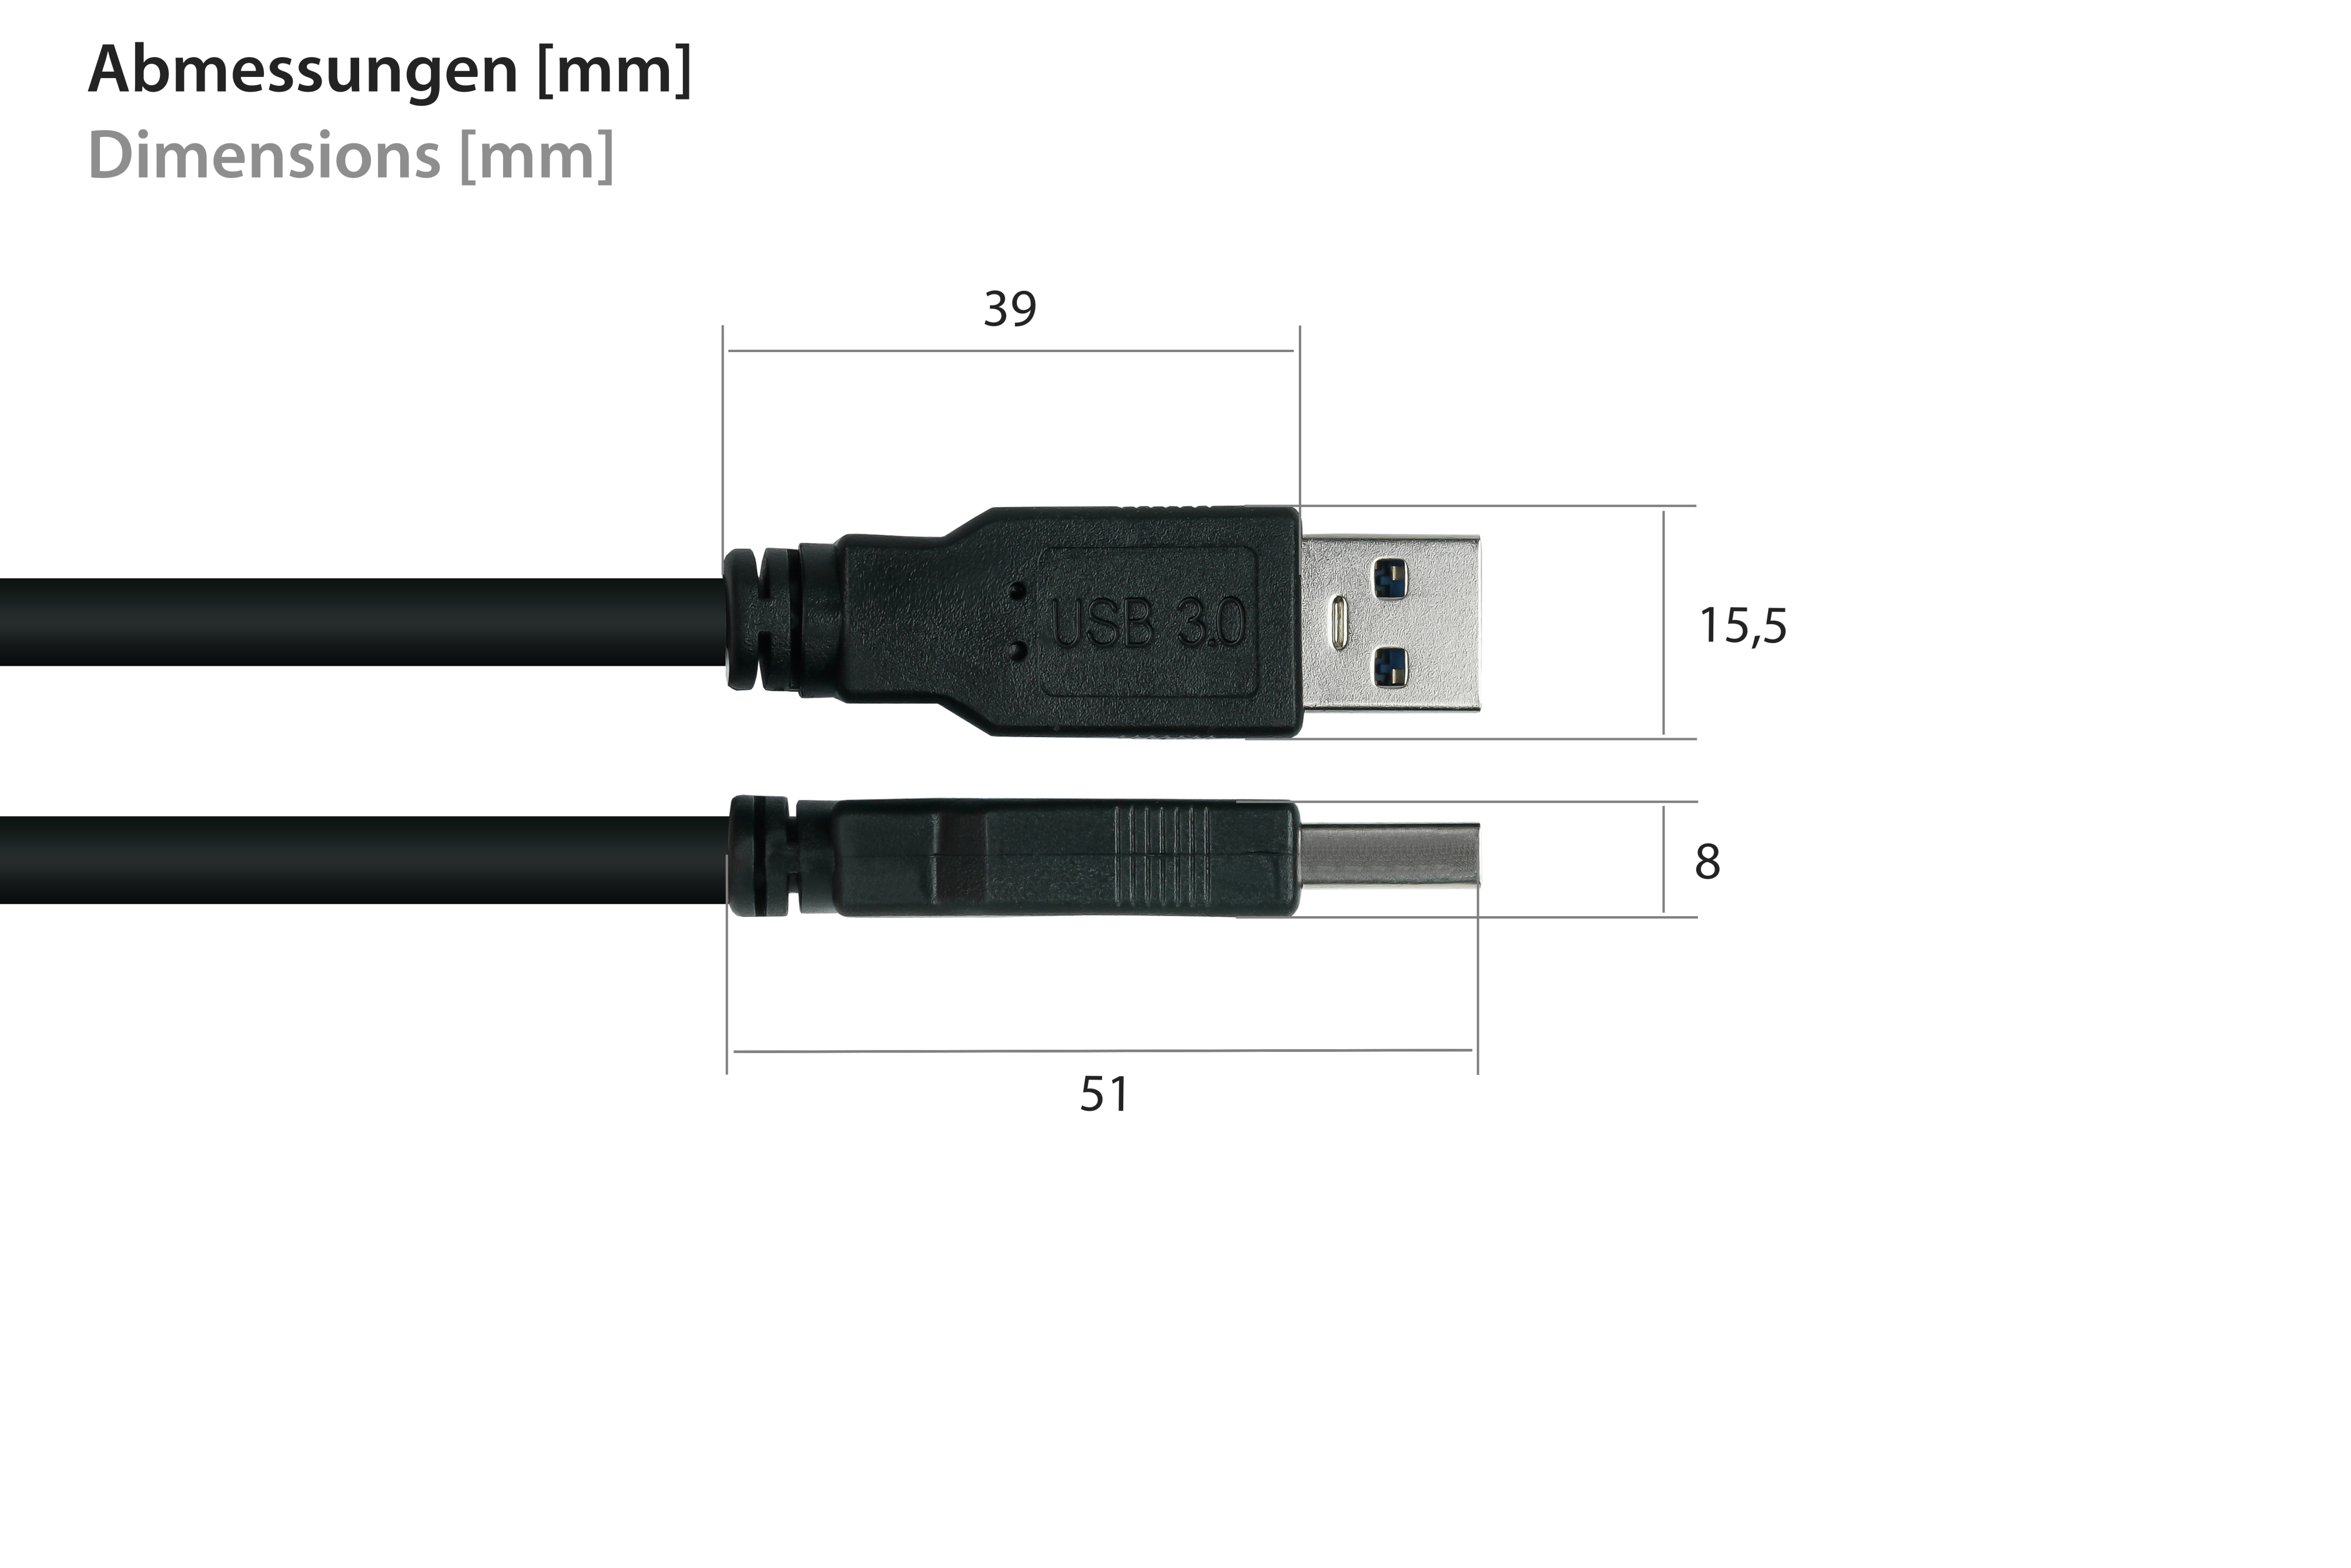 Micro KABELMEISTER AWG28 KUPFER, schwarz an A 3.0 B,Premium, bel KaUSB Stecker Stecker / UL, Kabel AWG24, USB